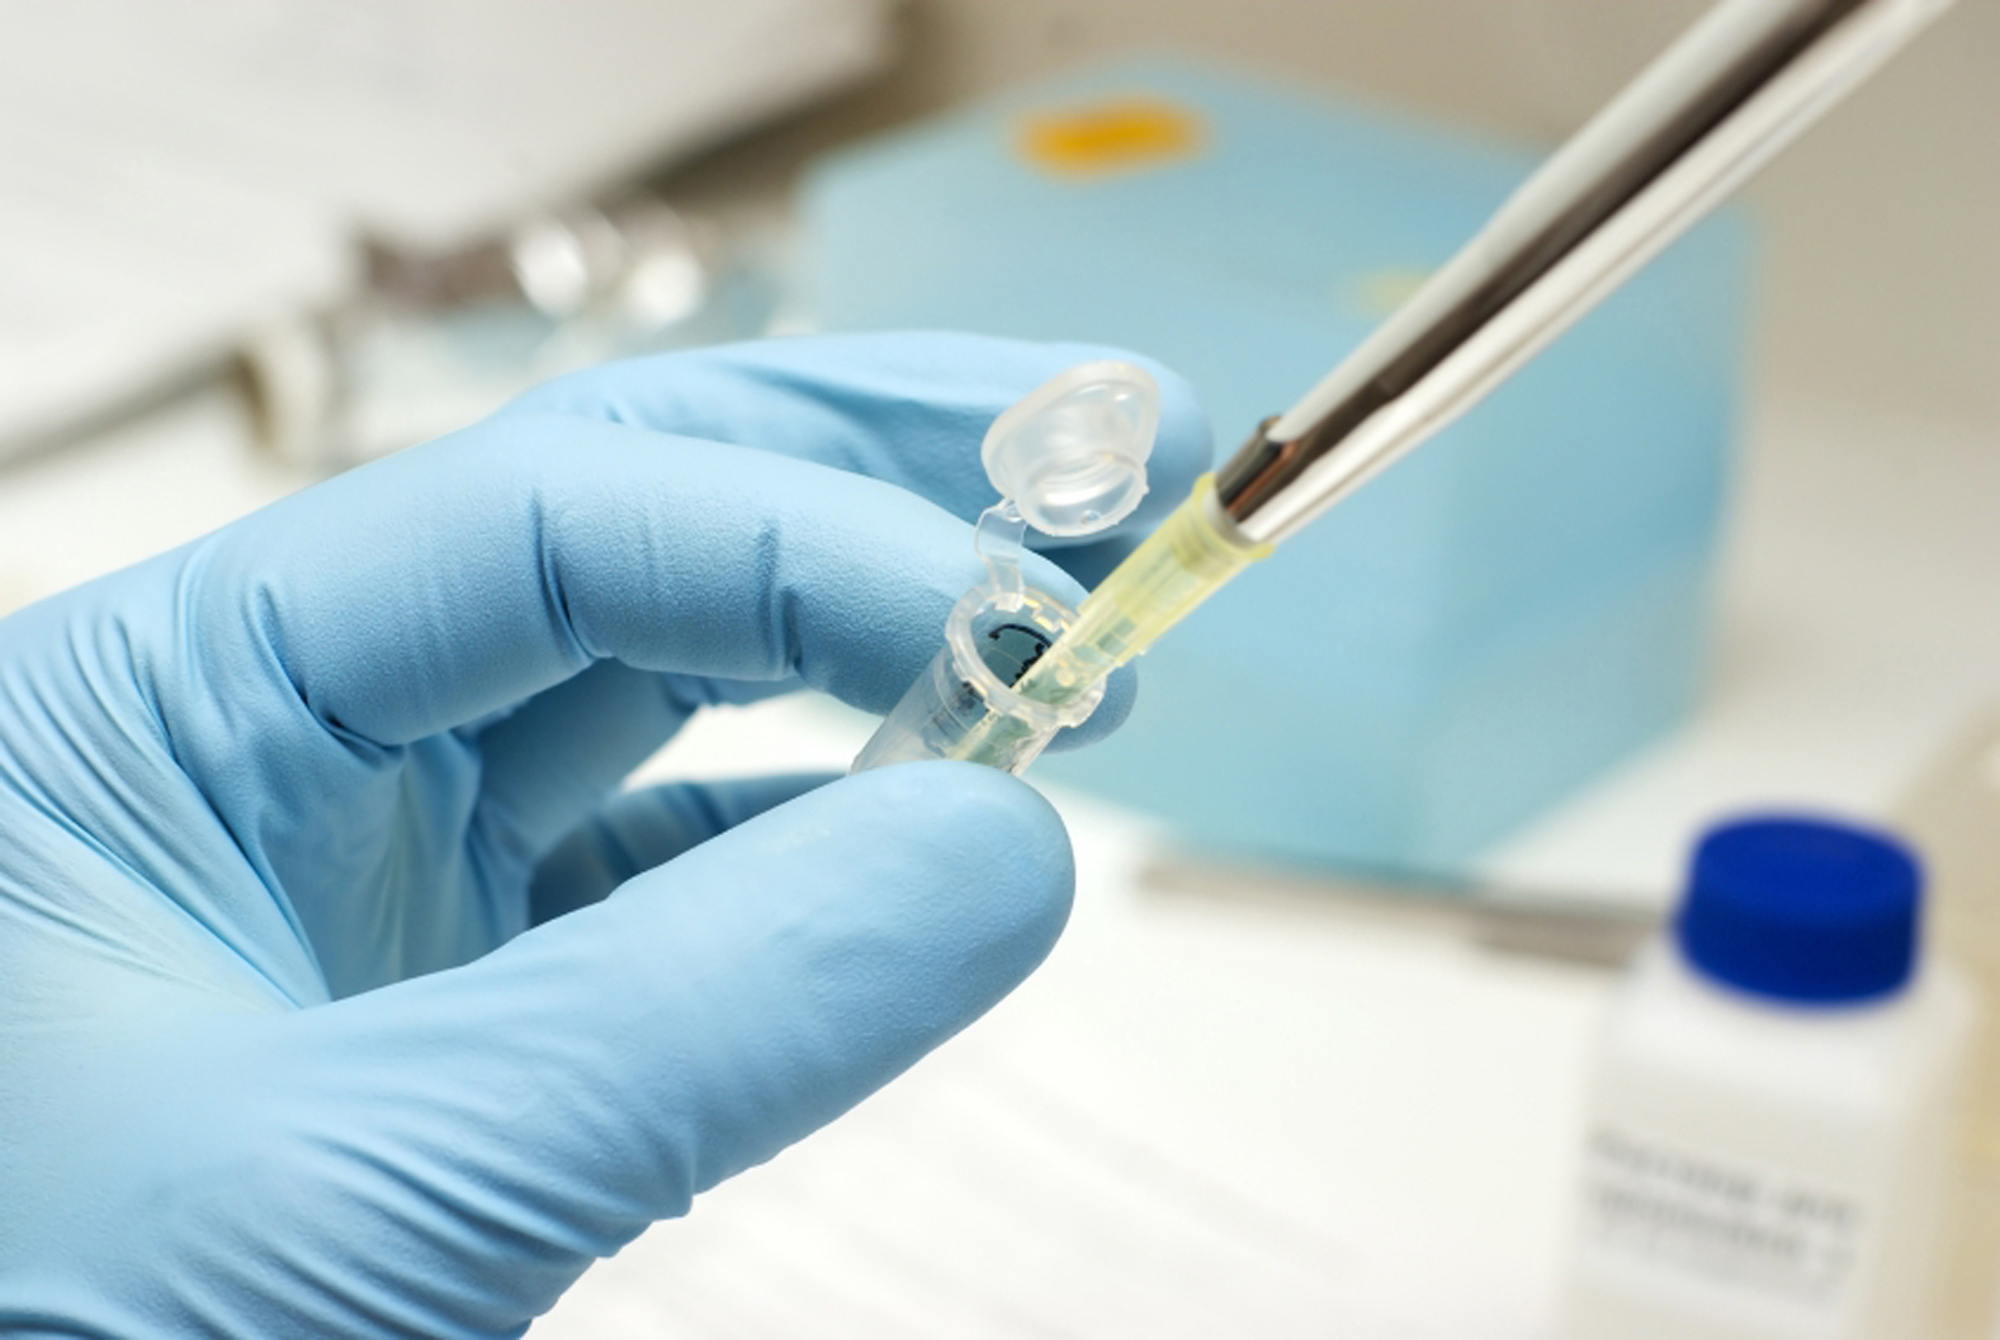 Εμβόλια κατά της ηπατίτιδας C και του AIDS, δημιουργούν επιστημονική αισιοδοξία